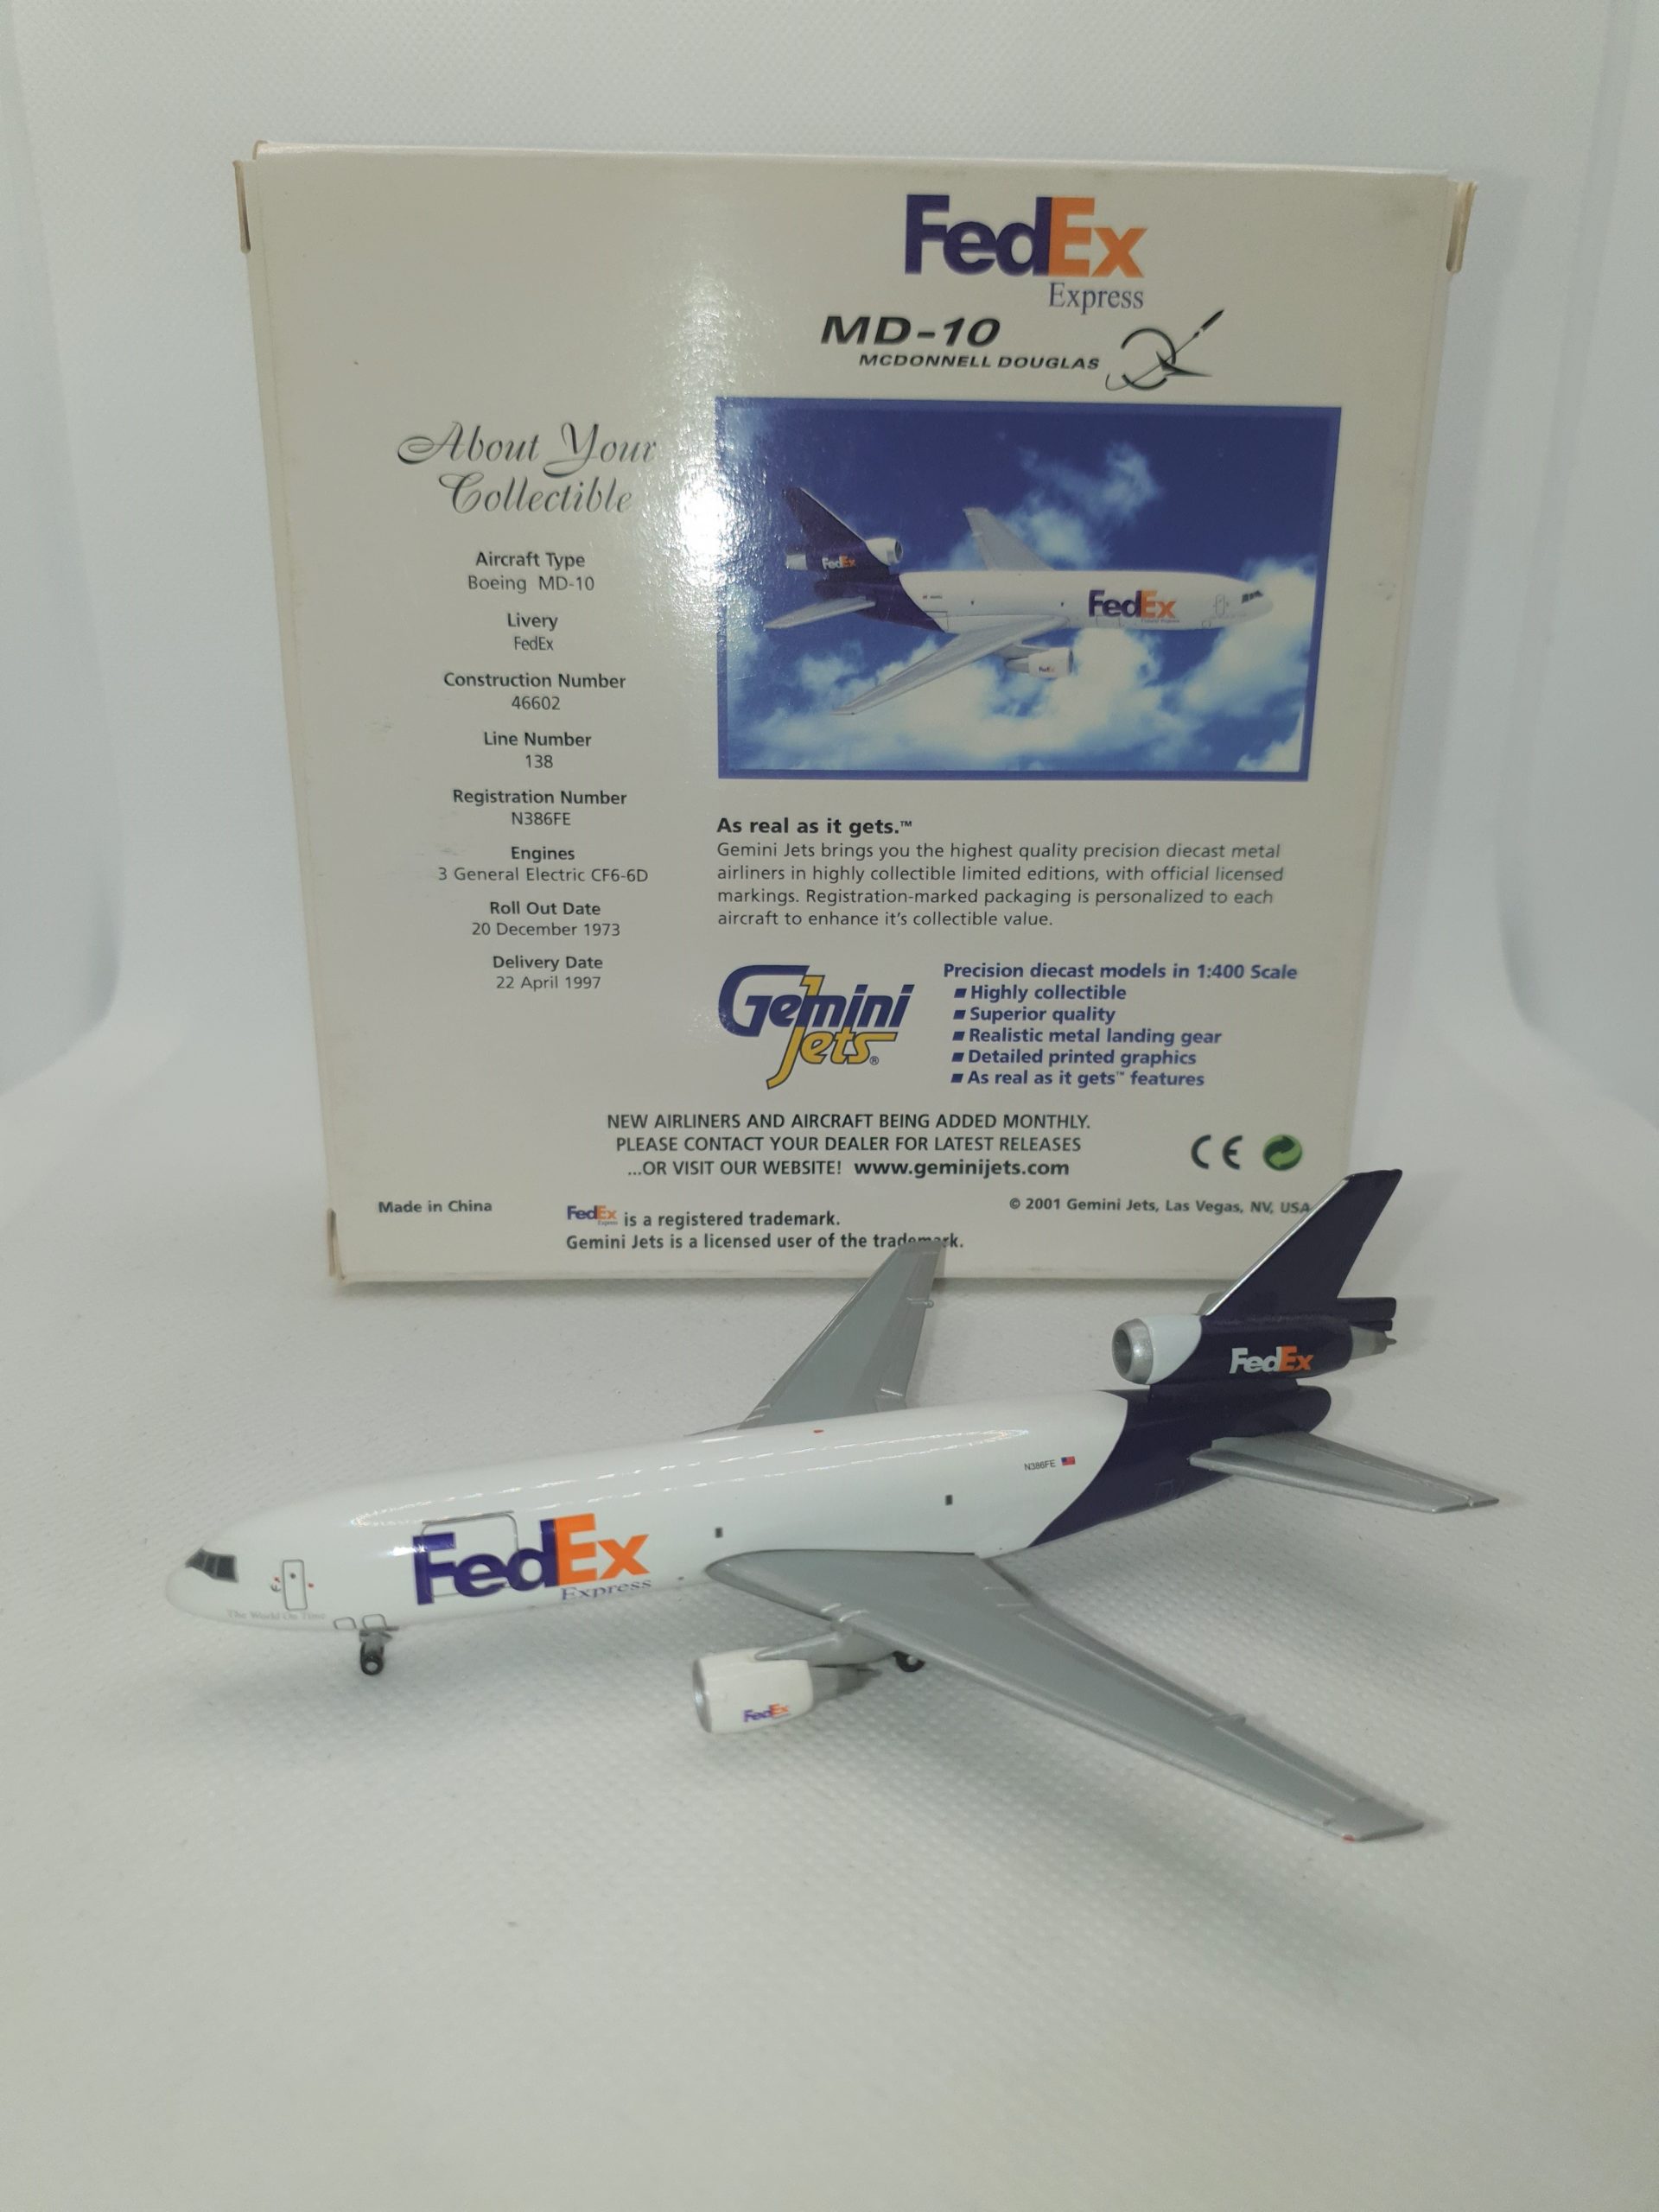 おむつ★ Gemini200 FedEx フェデックス MD-11 N625FE ★ 民間航空機